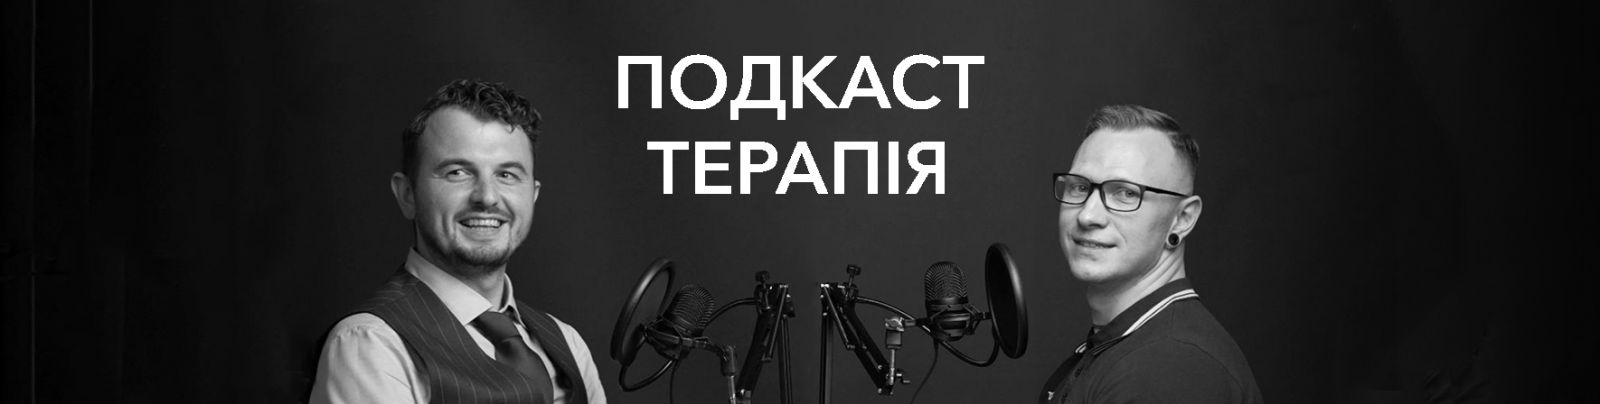 Podcast Terapia v Odesi